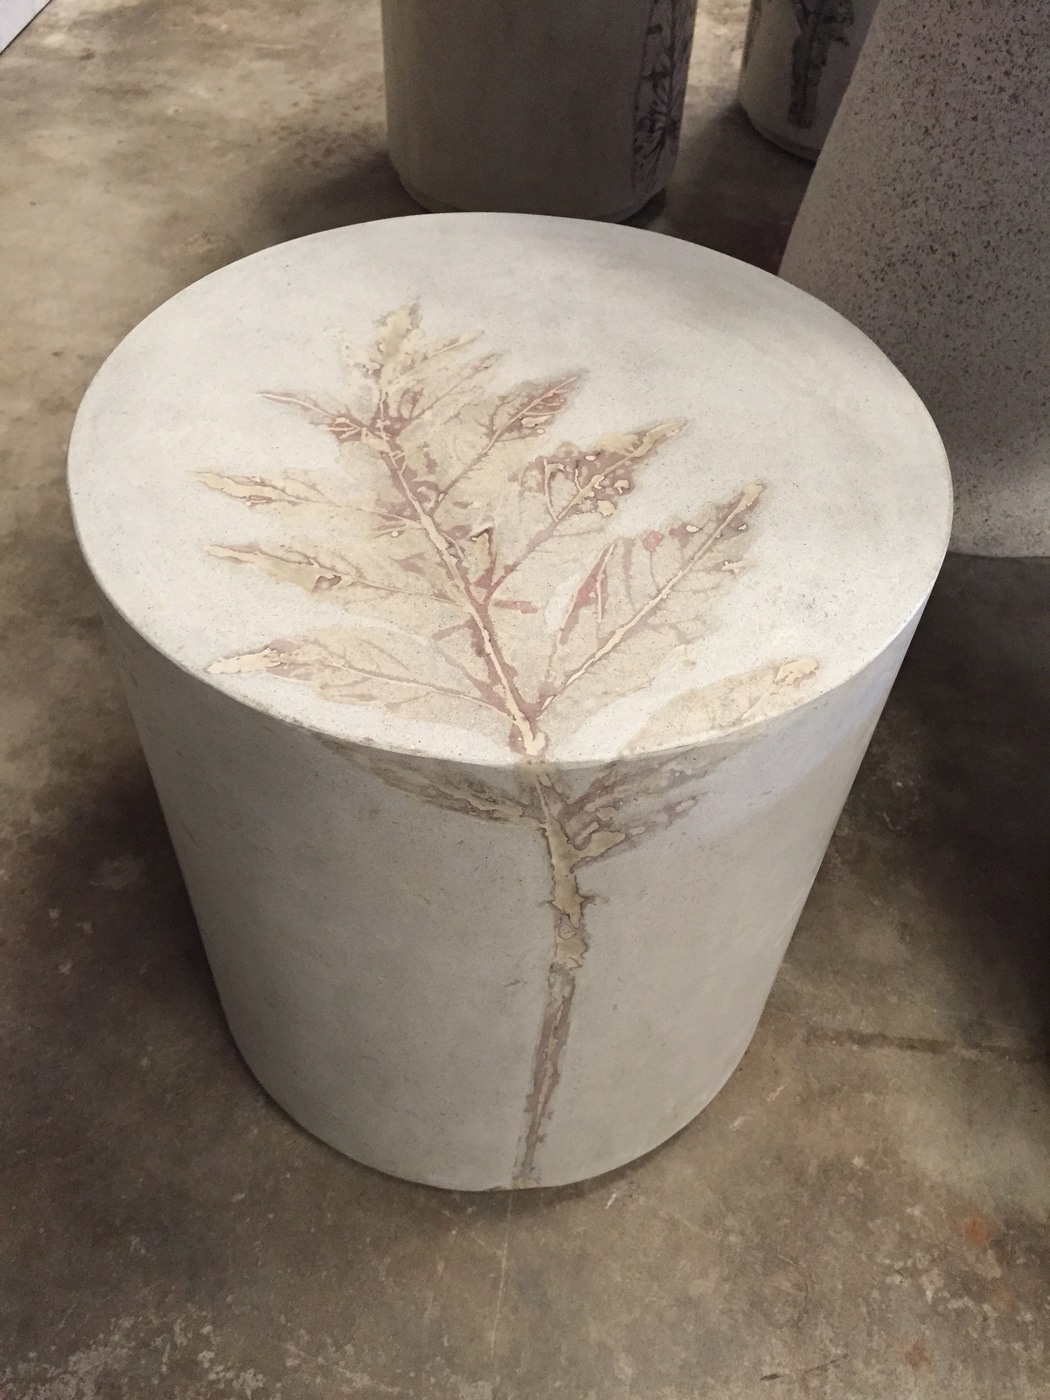 Concrete Pliny end table with artichoke leaf impression